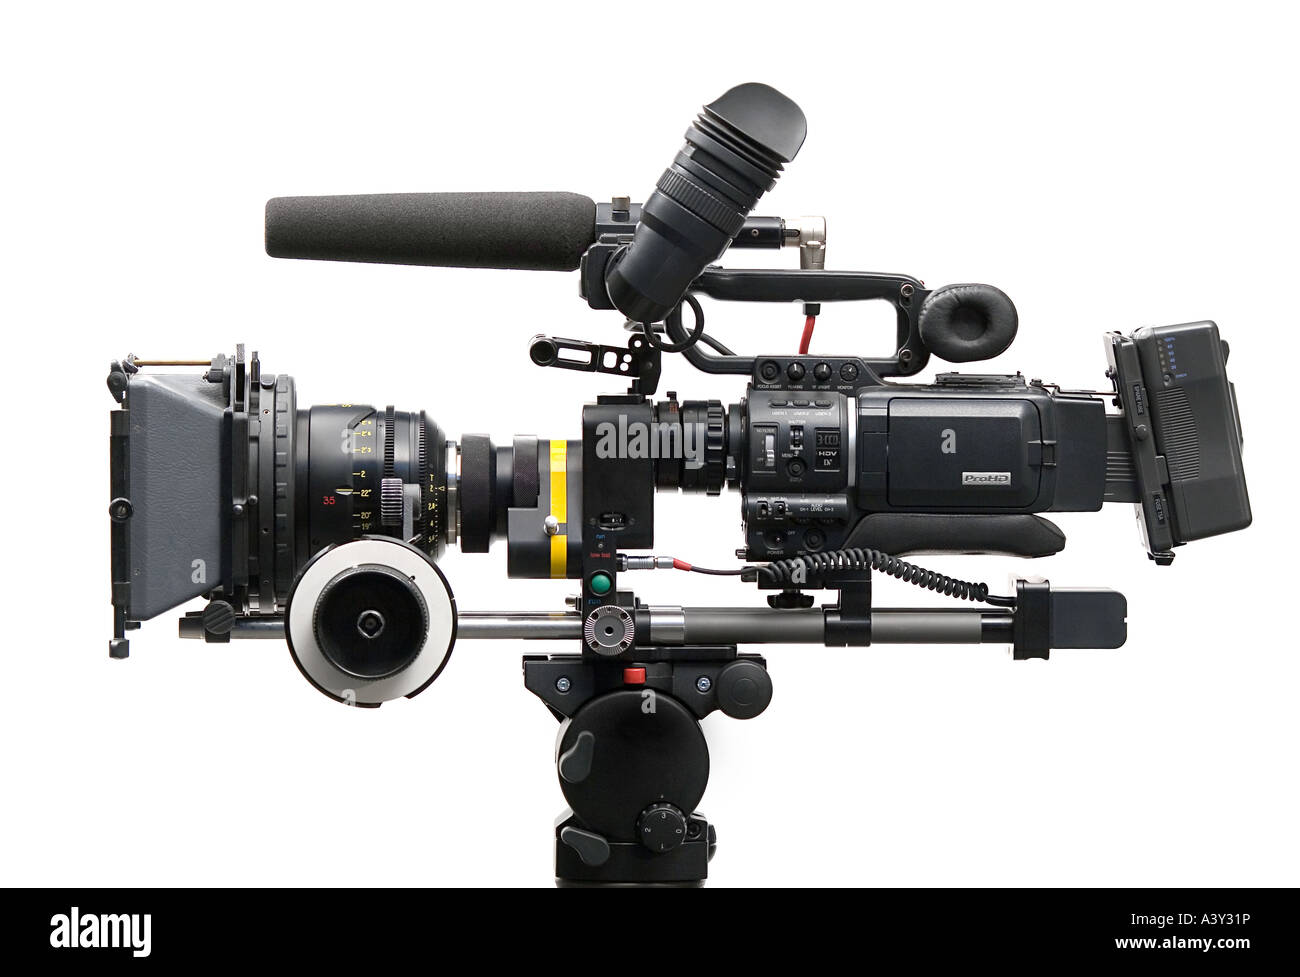 JVC Professional Broadcast Video Digitale Fotocamera su uno sfondo bianco cioè deepetched. Nessun logo visibile. Foto Stock